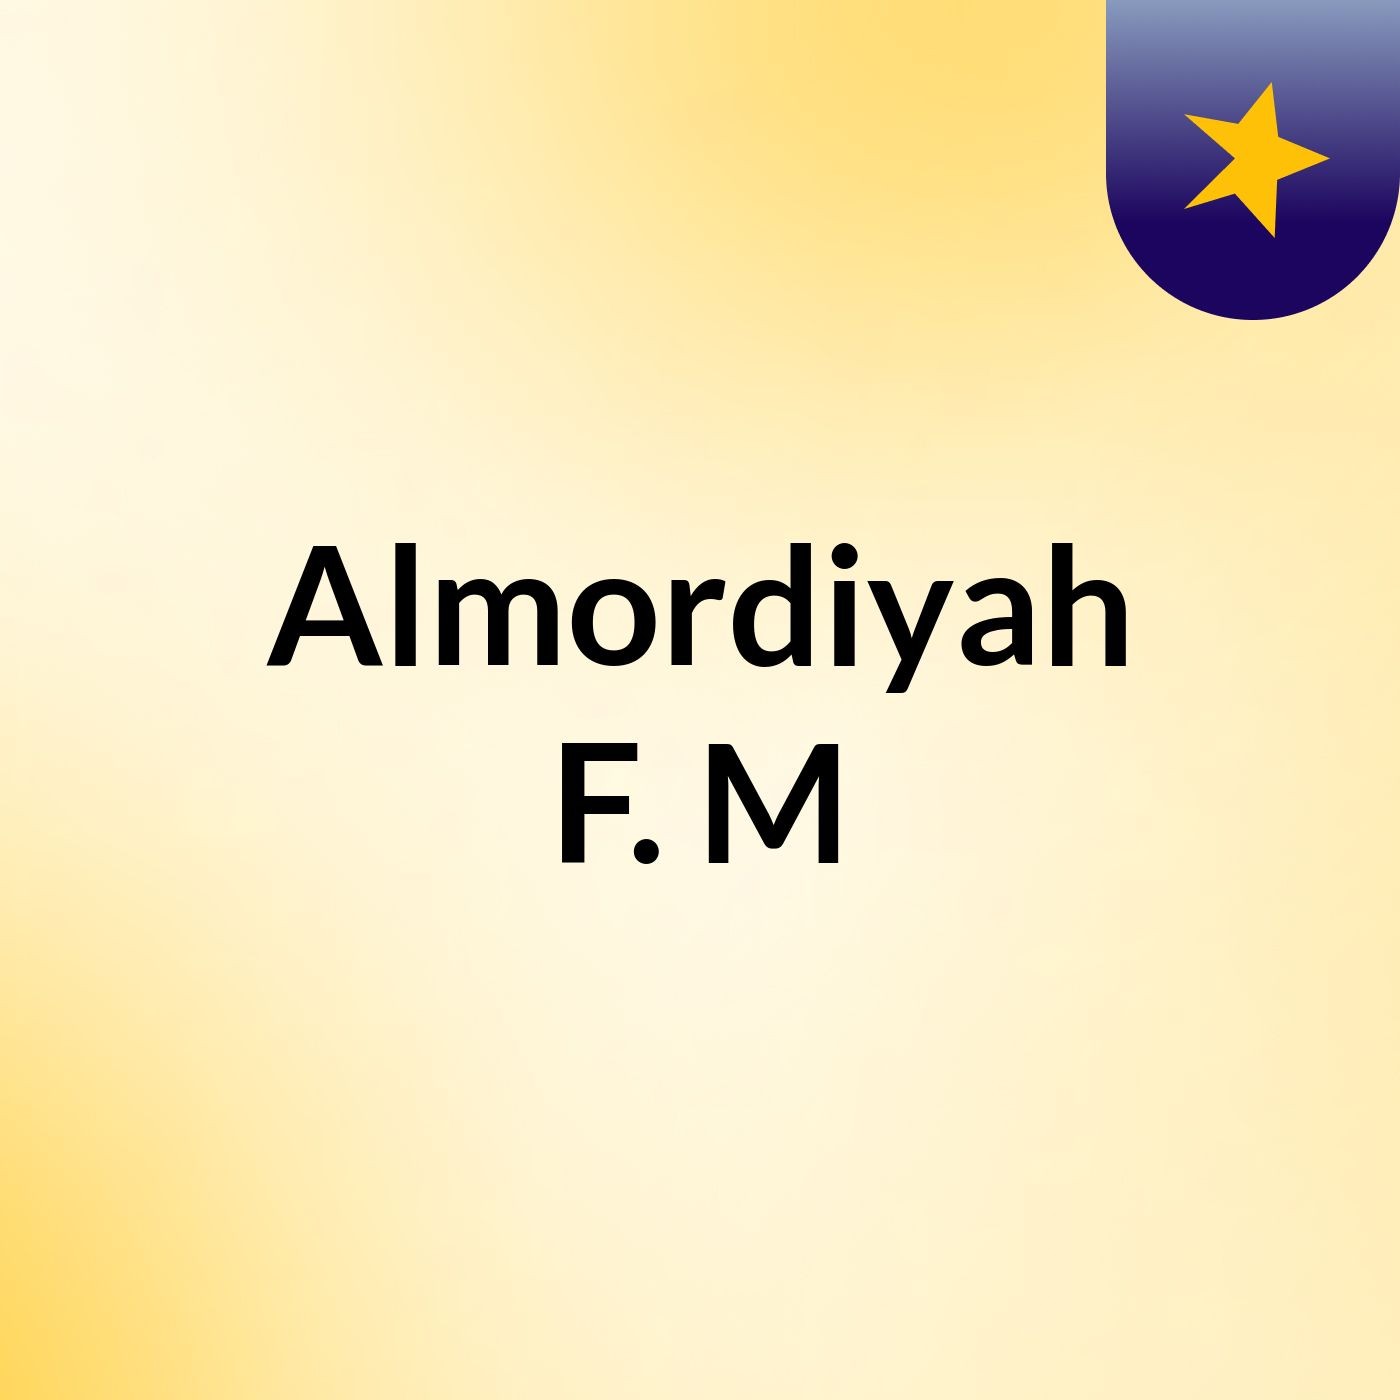 Episode 9 - Almordiyah F. M